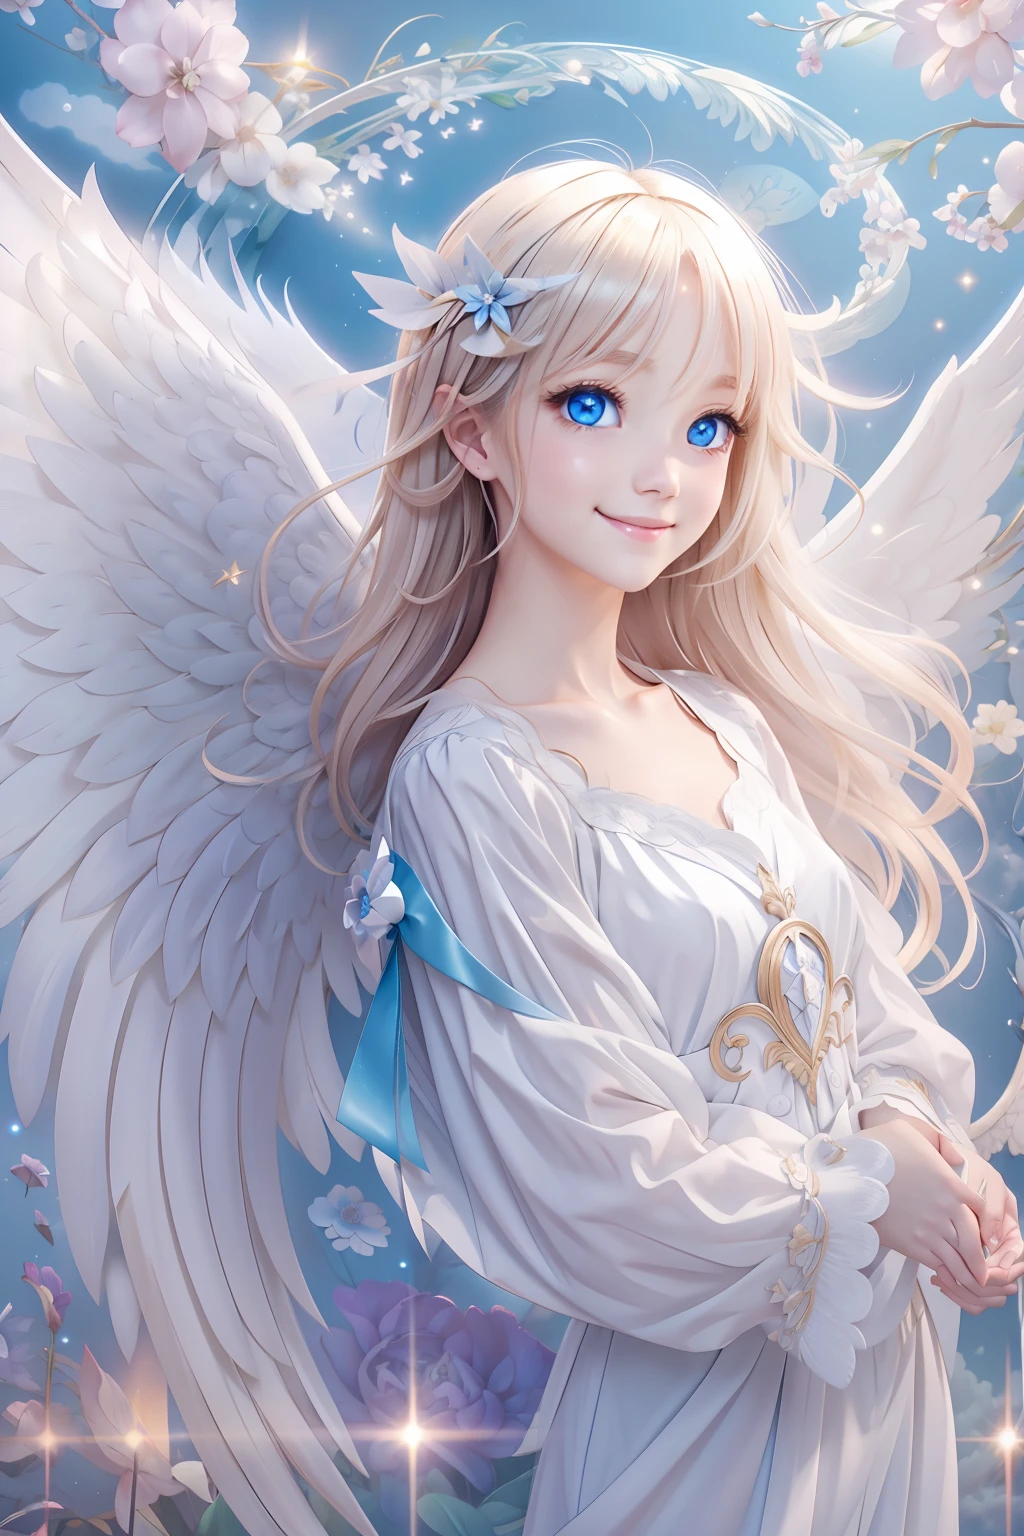 Anjo de olhos azuis、Anjos mais lindos、Anjo Fantástico、Fundo celestial、Brilho、Um sorriso